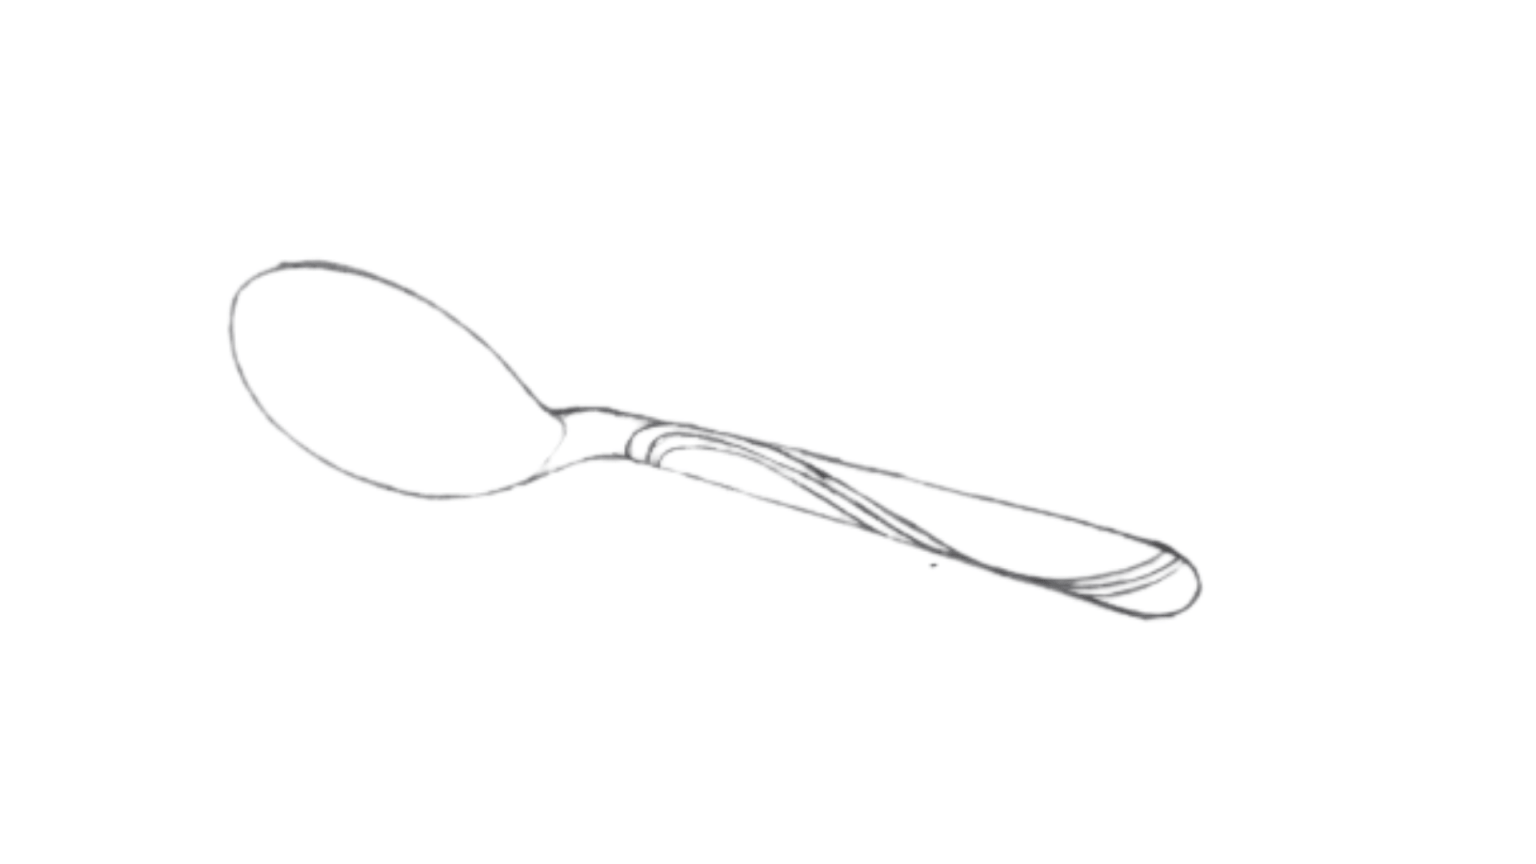 How To Draw Spoon Step by Step Drawwiki